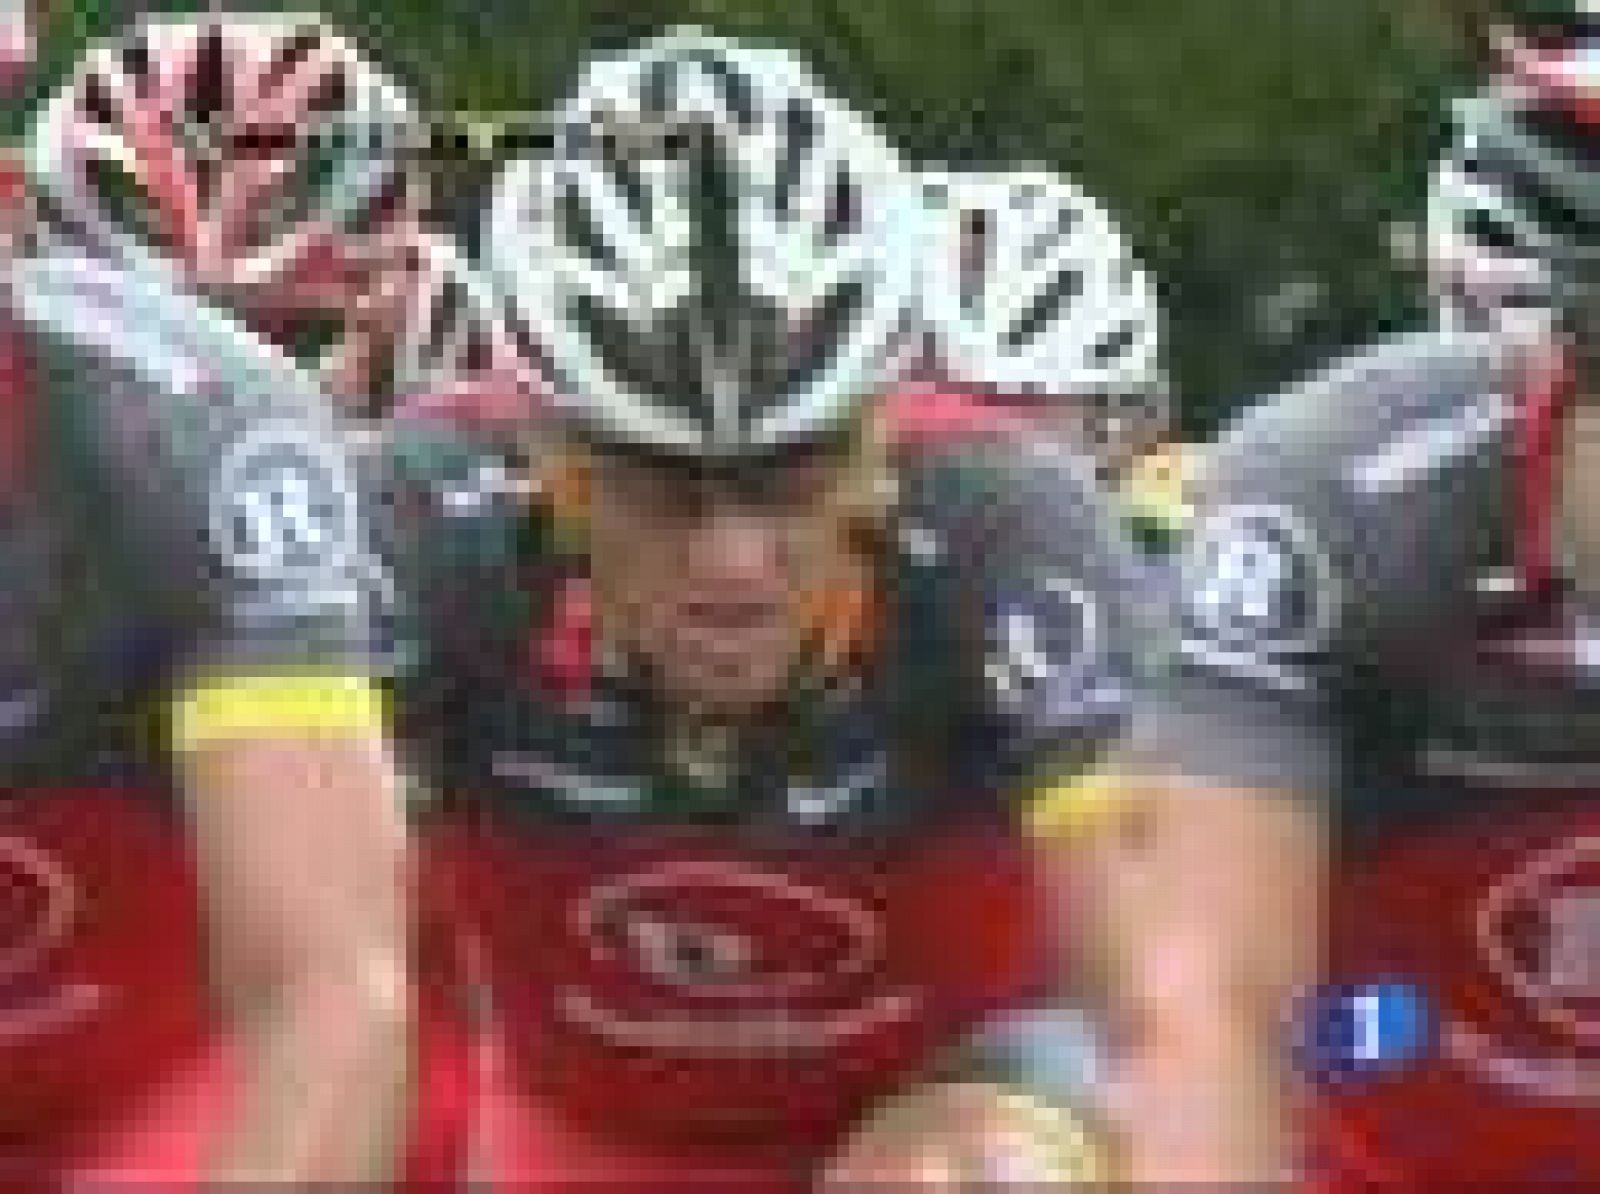 Parece mentira. Después de sus disputas en este mismo escenario hace tan sólo un año, Armstrong habla ahora de Contador como "el mejor ciclista" que ha visto. El español pasa de puntillas por sus declaraciones y asegura que entre ellos hay "respeto m